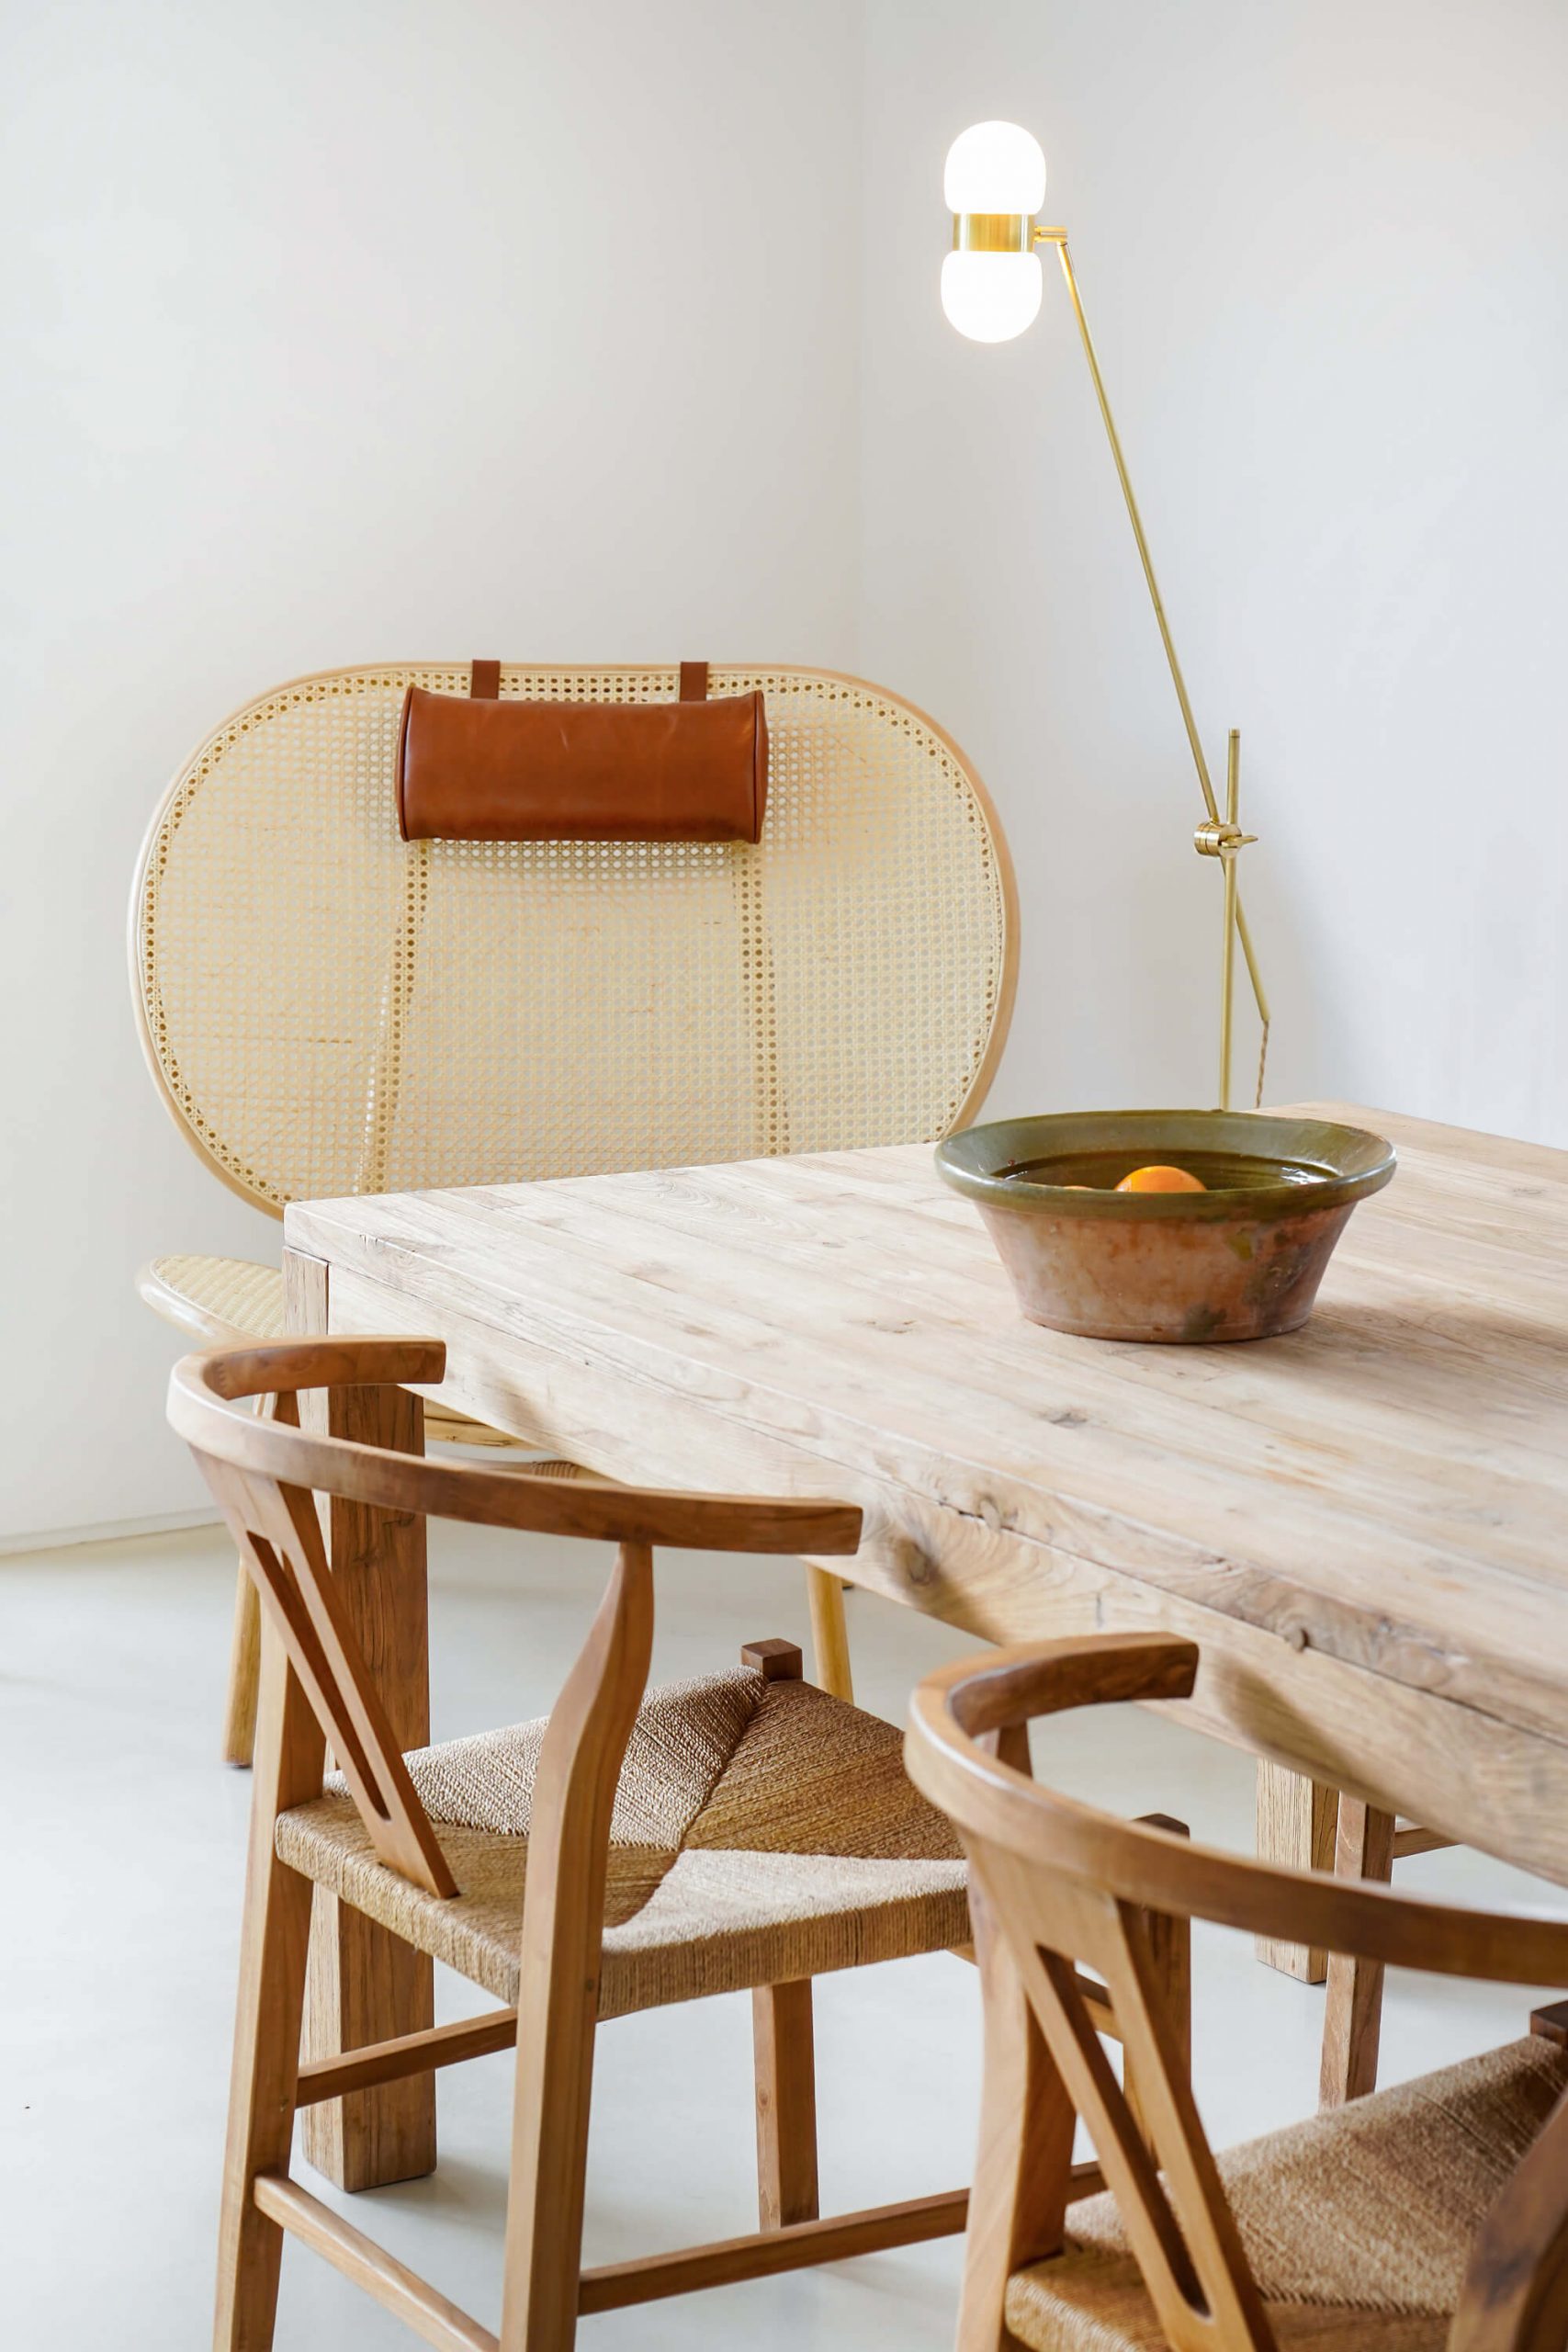 CasaE - Marina Senabre. Casa minimalista com mesa de madeira, e releitura da classica cadeira wishbone.